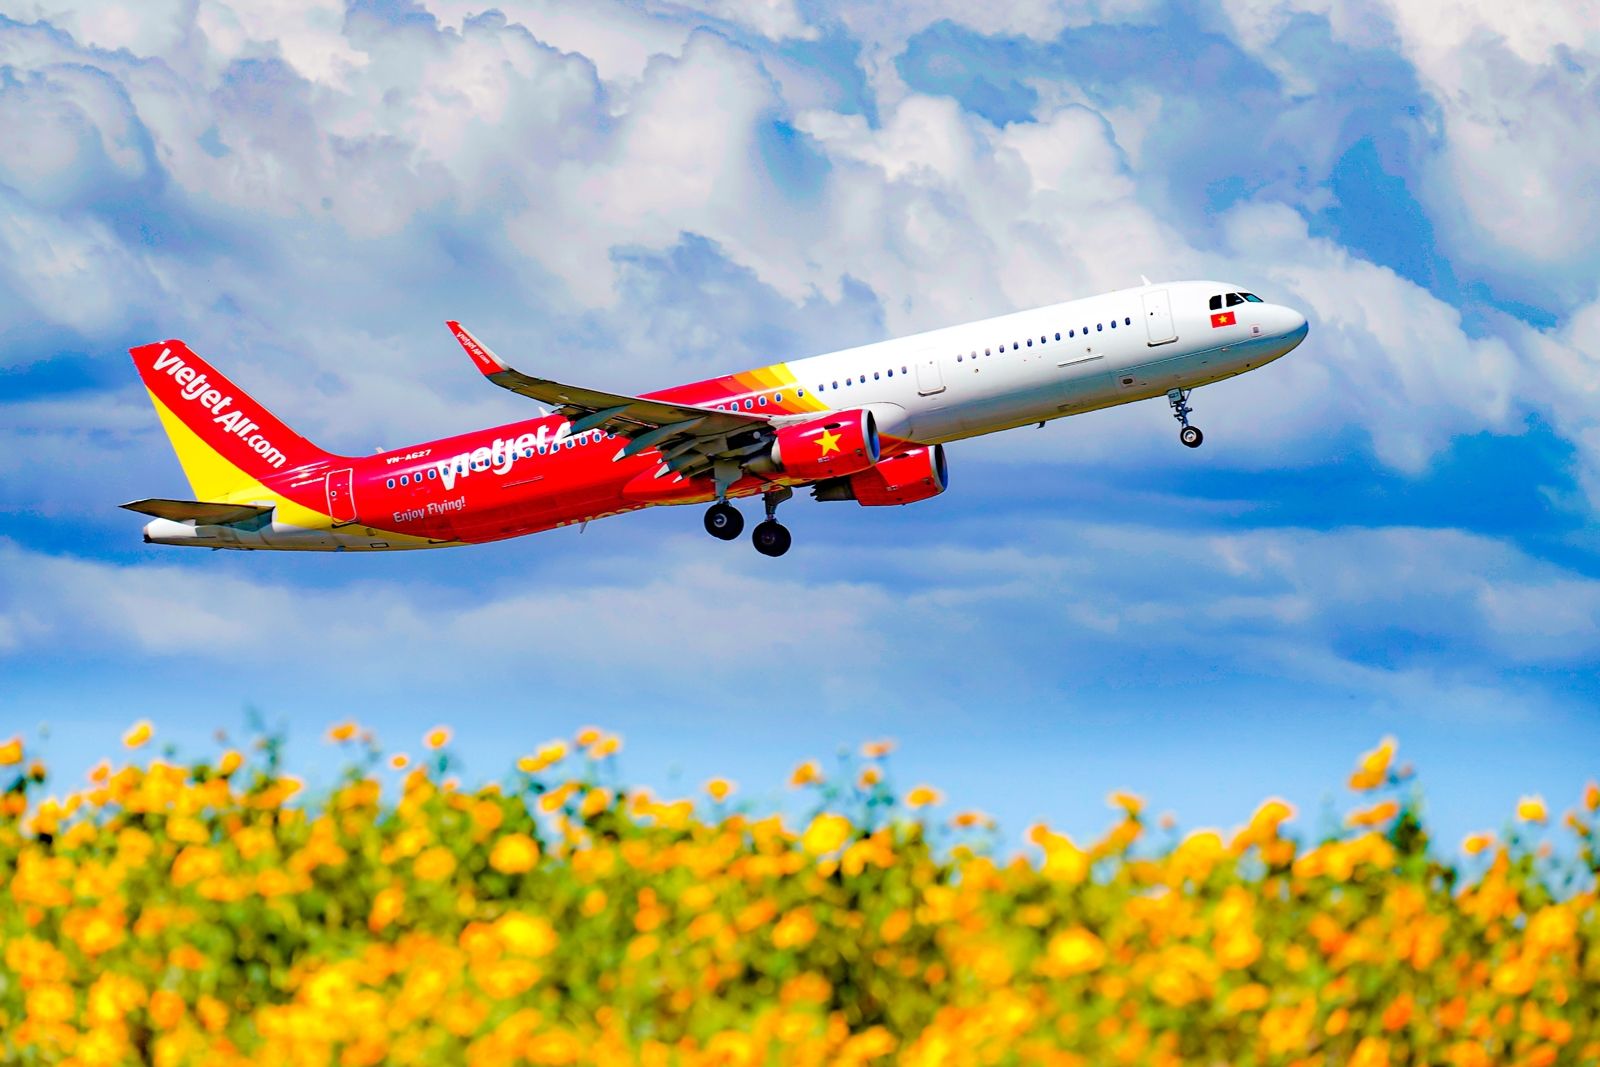 Vietjet airplane flying over wild sunflowers فيت جيت تستأنف الرحلات الدولية